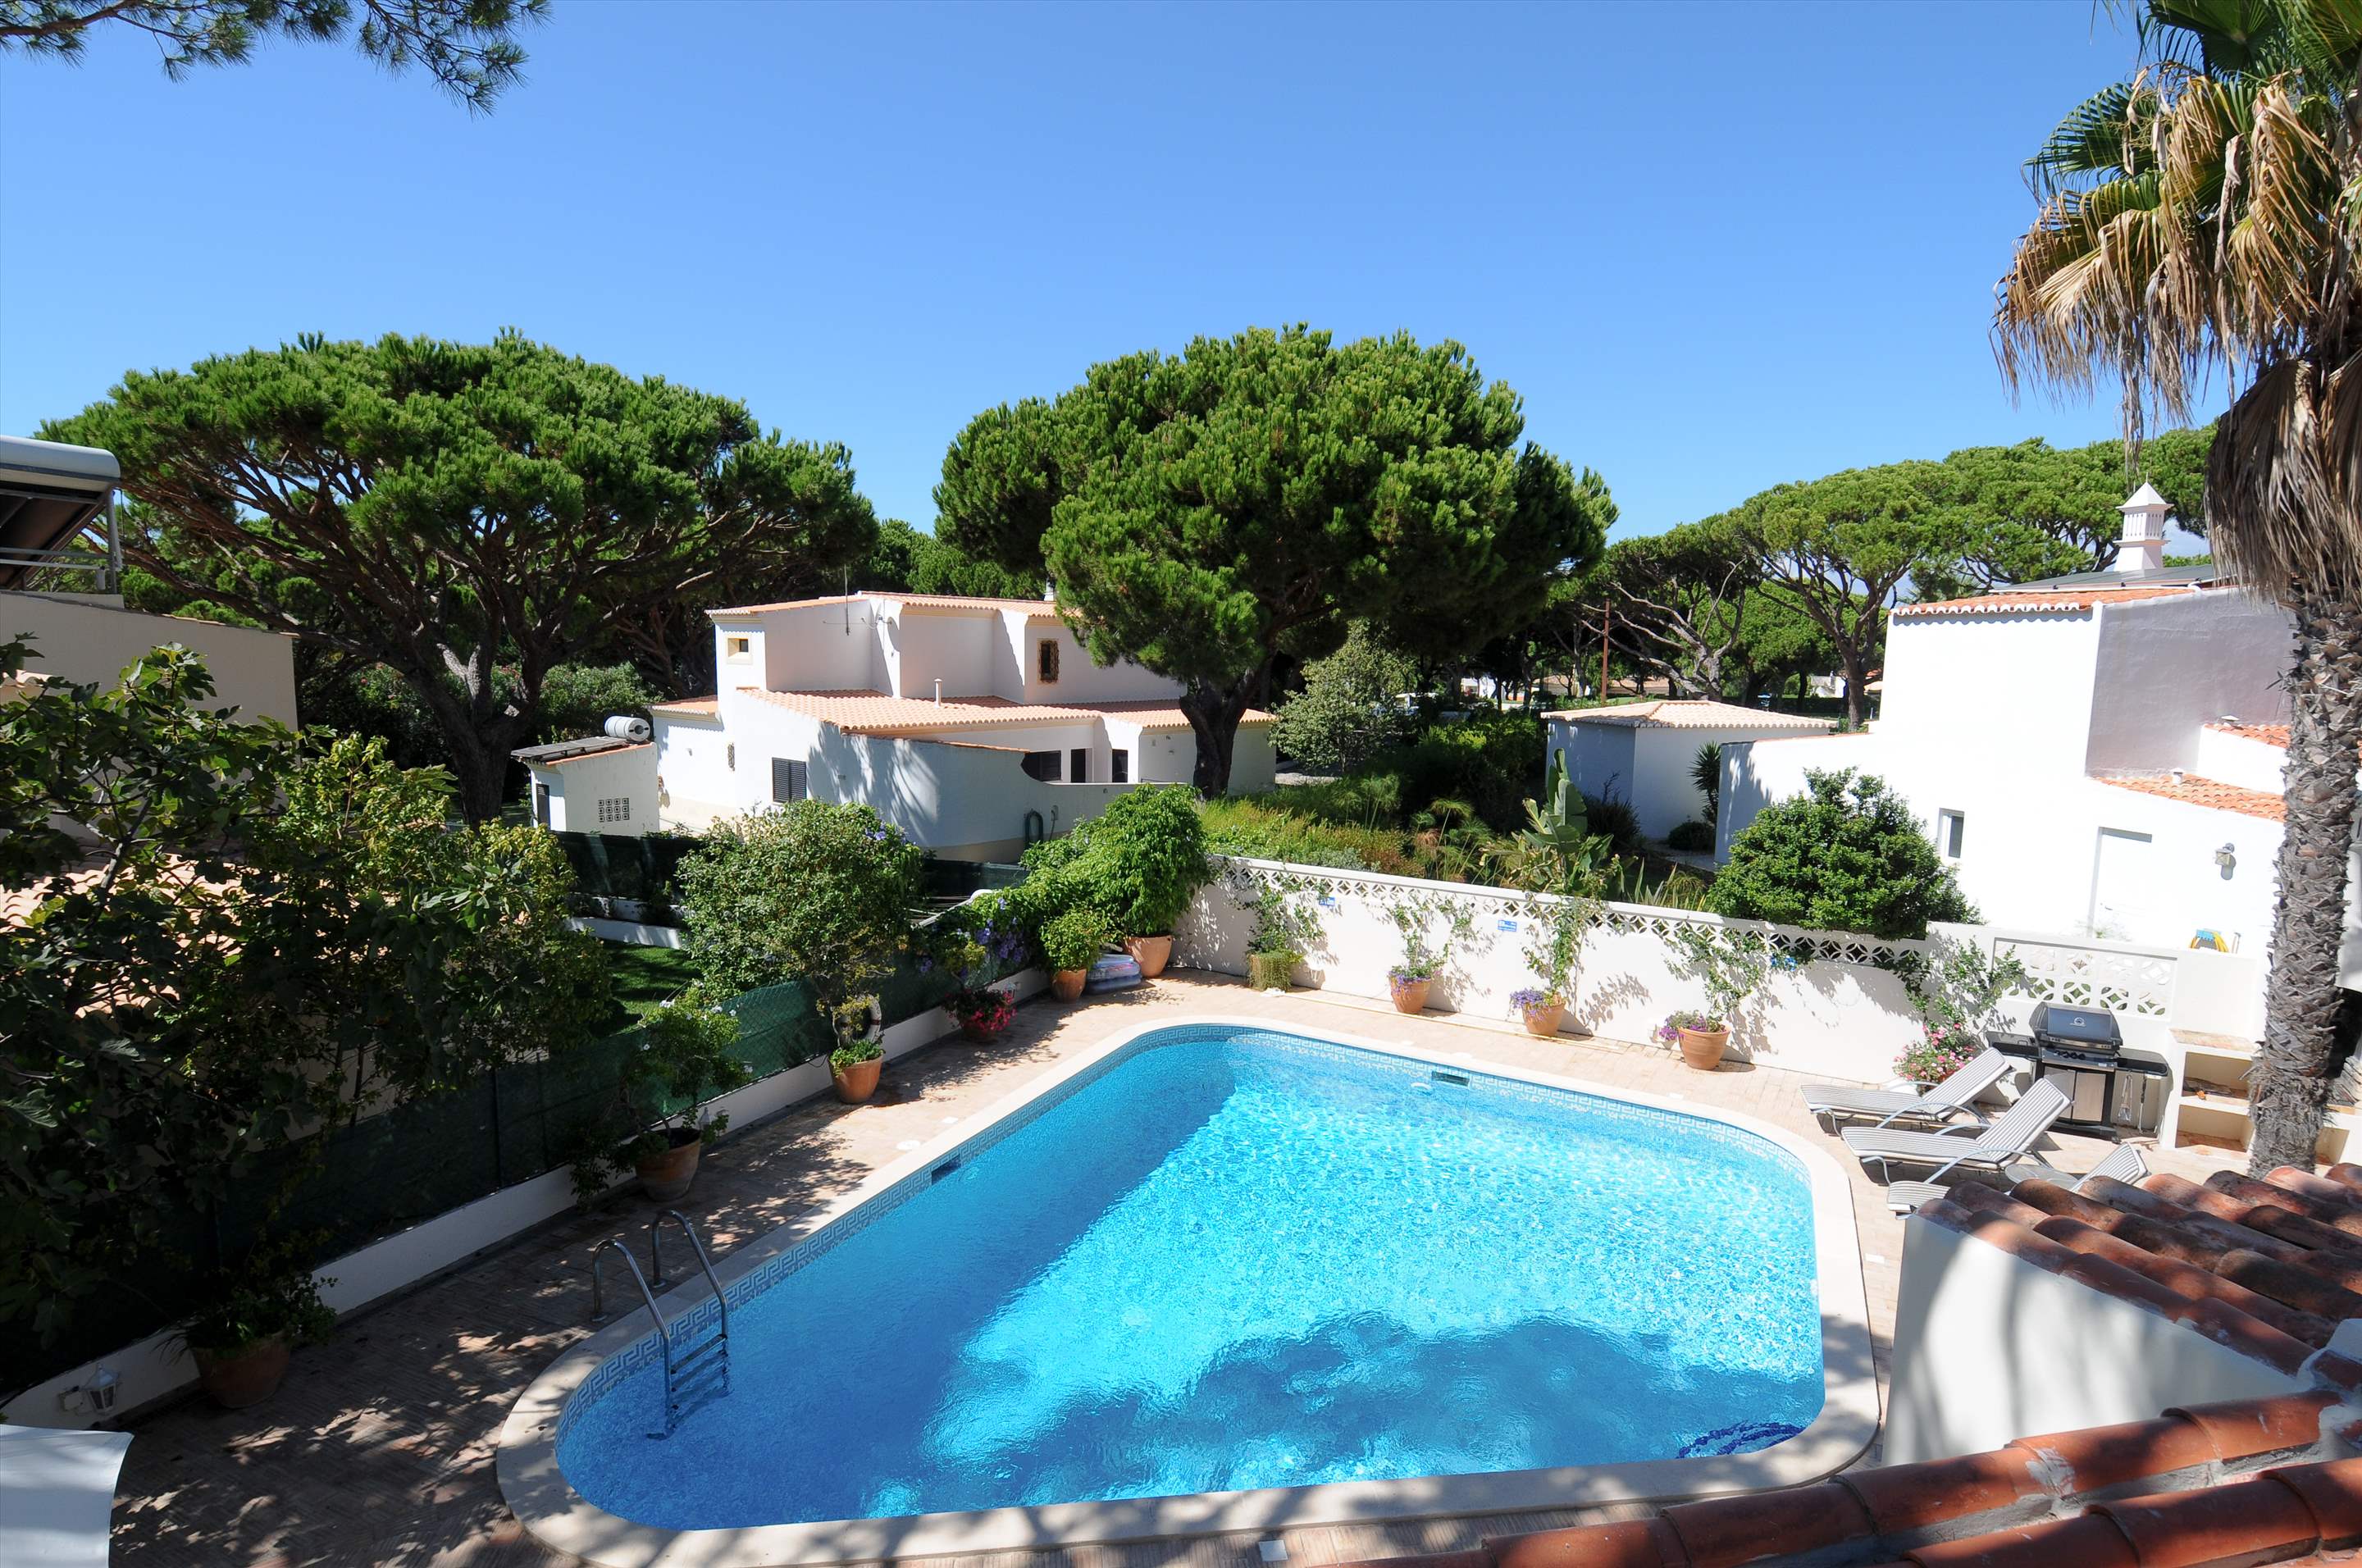 Casa Blanca, 3 Bed Rental, 3 bedroom villa in Vale do Lobo, Algarve Photo #7